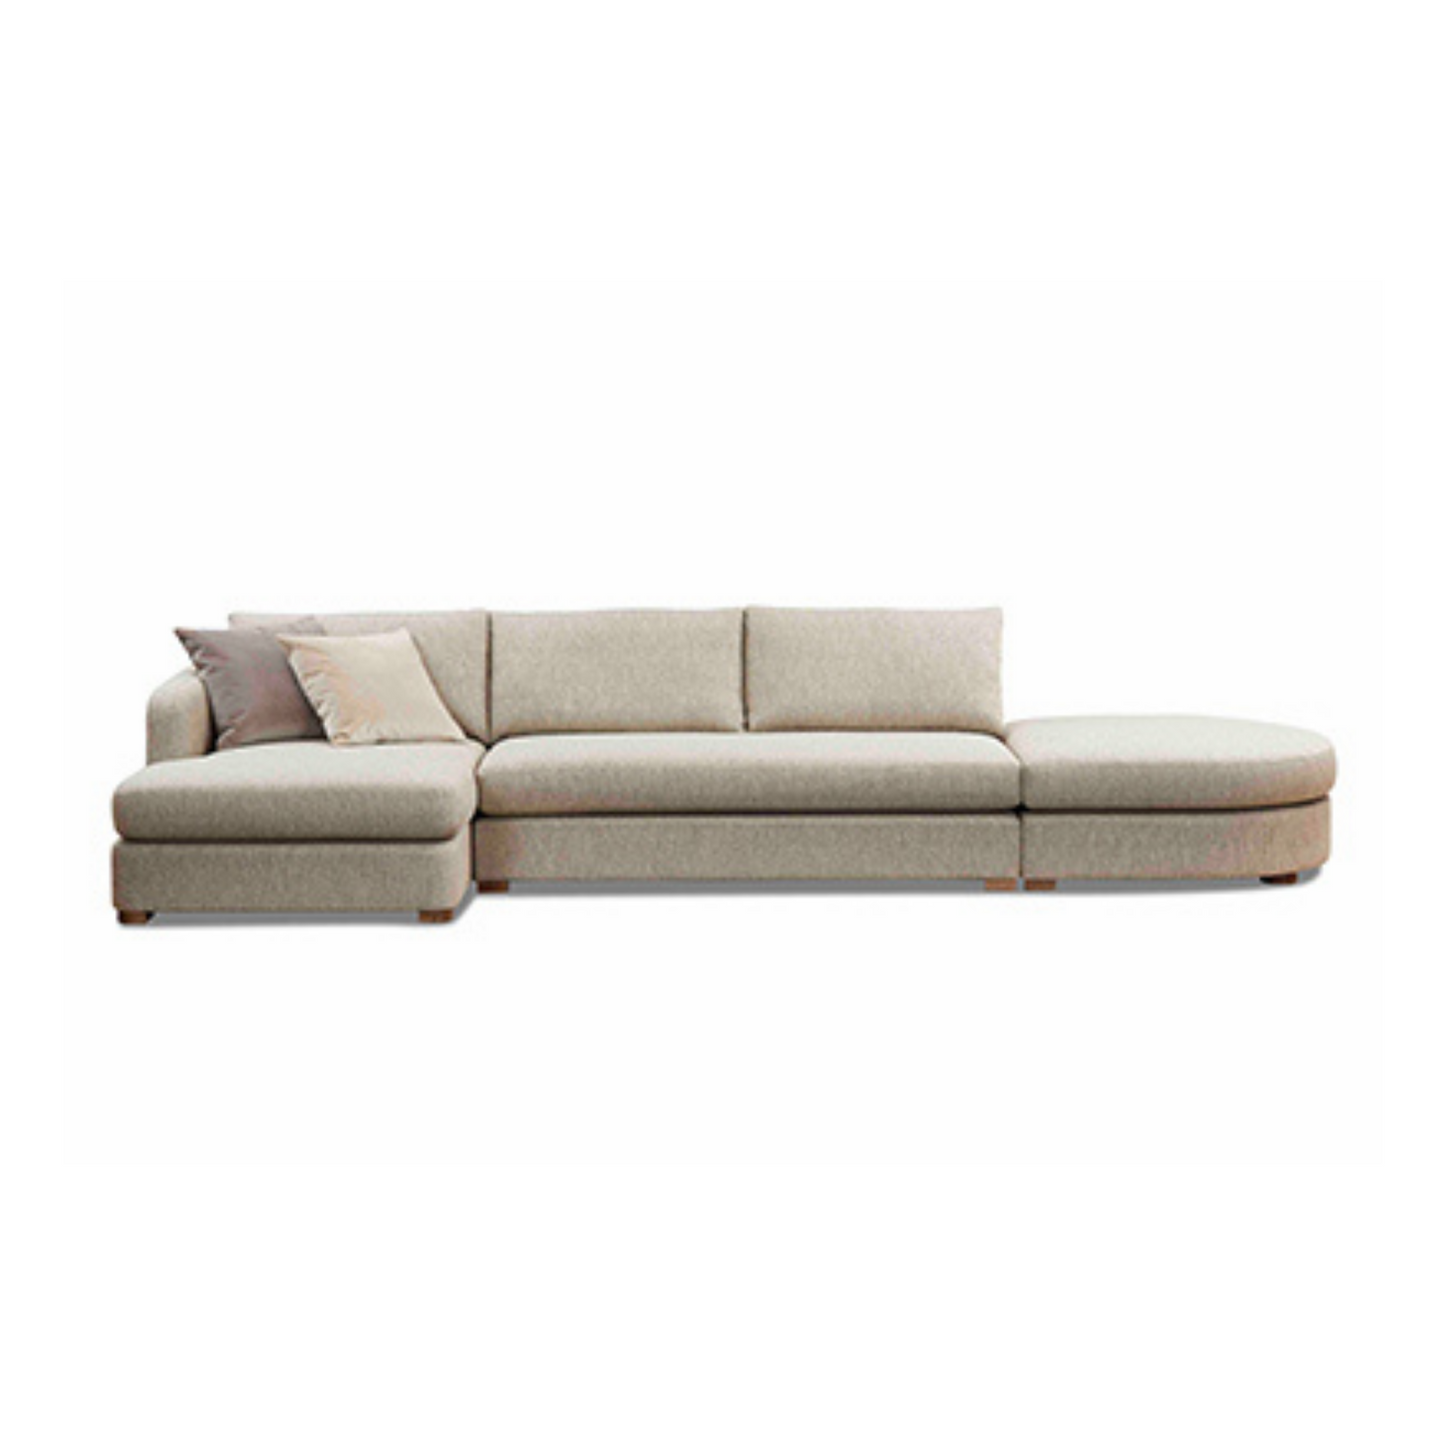 Palisades Modular Sofa by Molmic